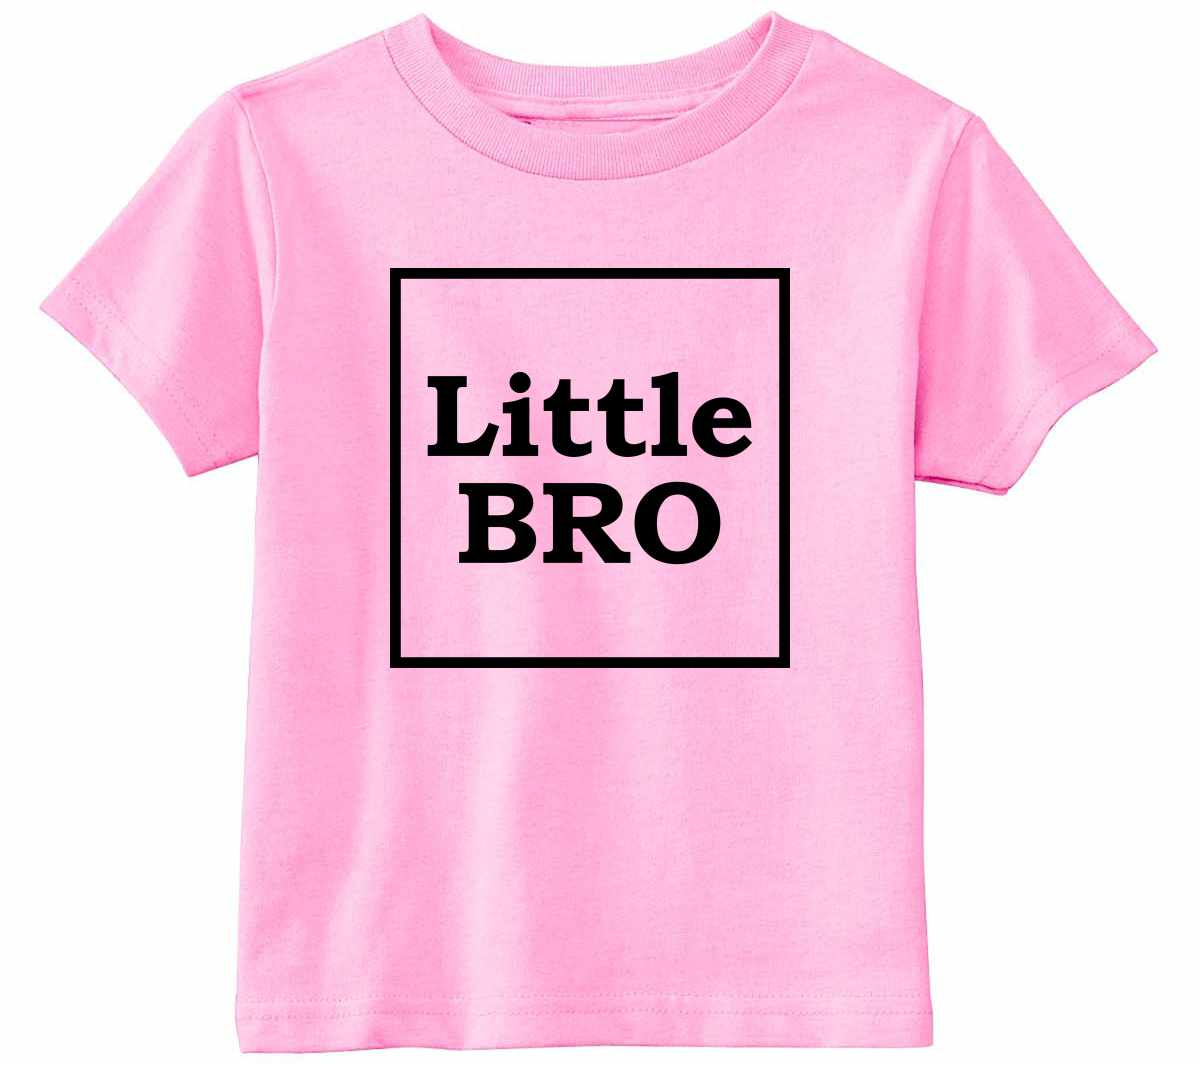 Little Bro on Infant-Toddler T-Shirt (#1247-7)